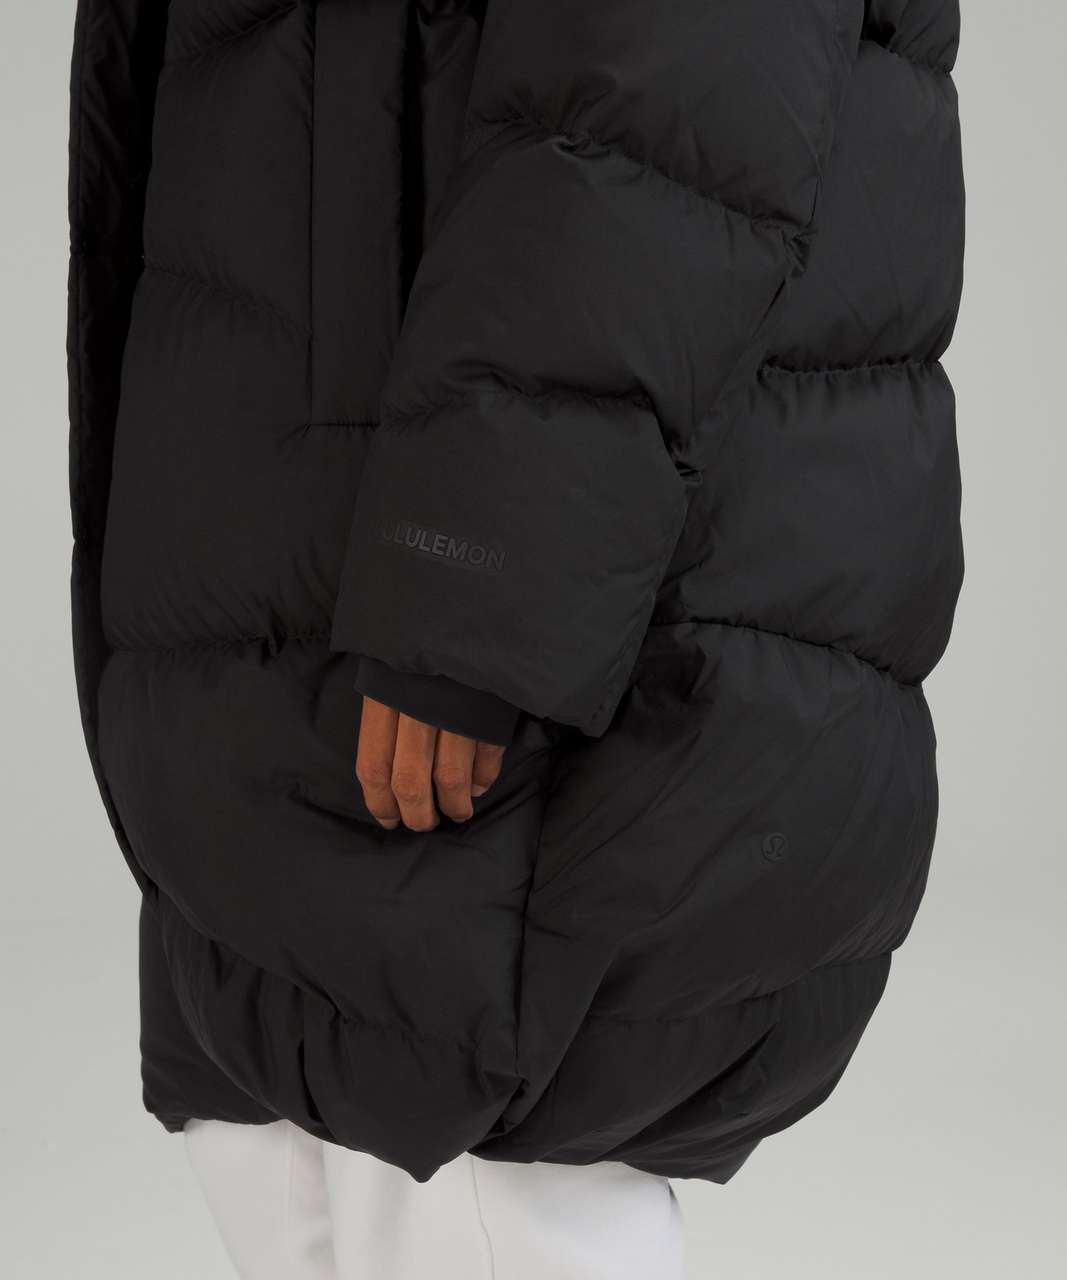 Lululemon Long Oversized Down Jacket - Black